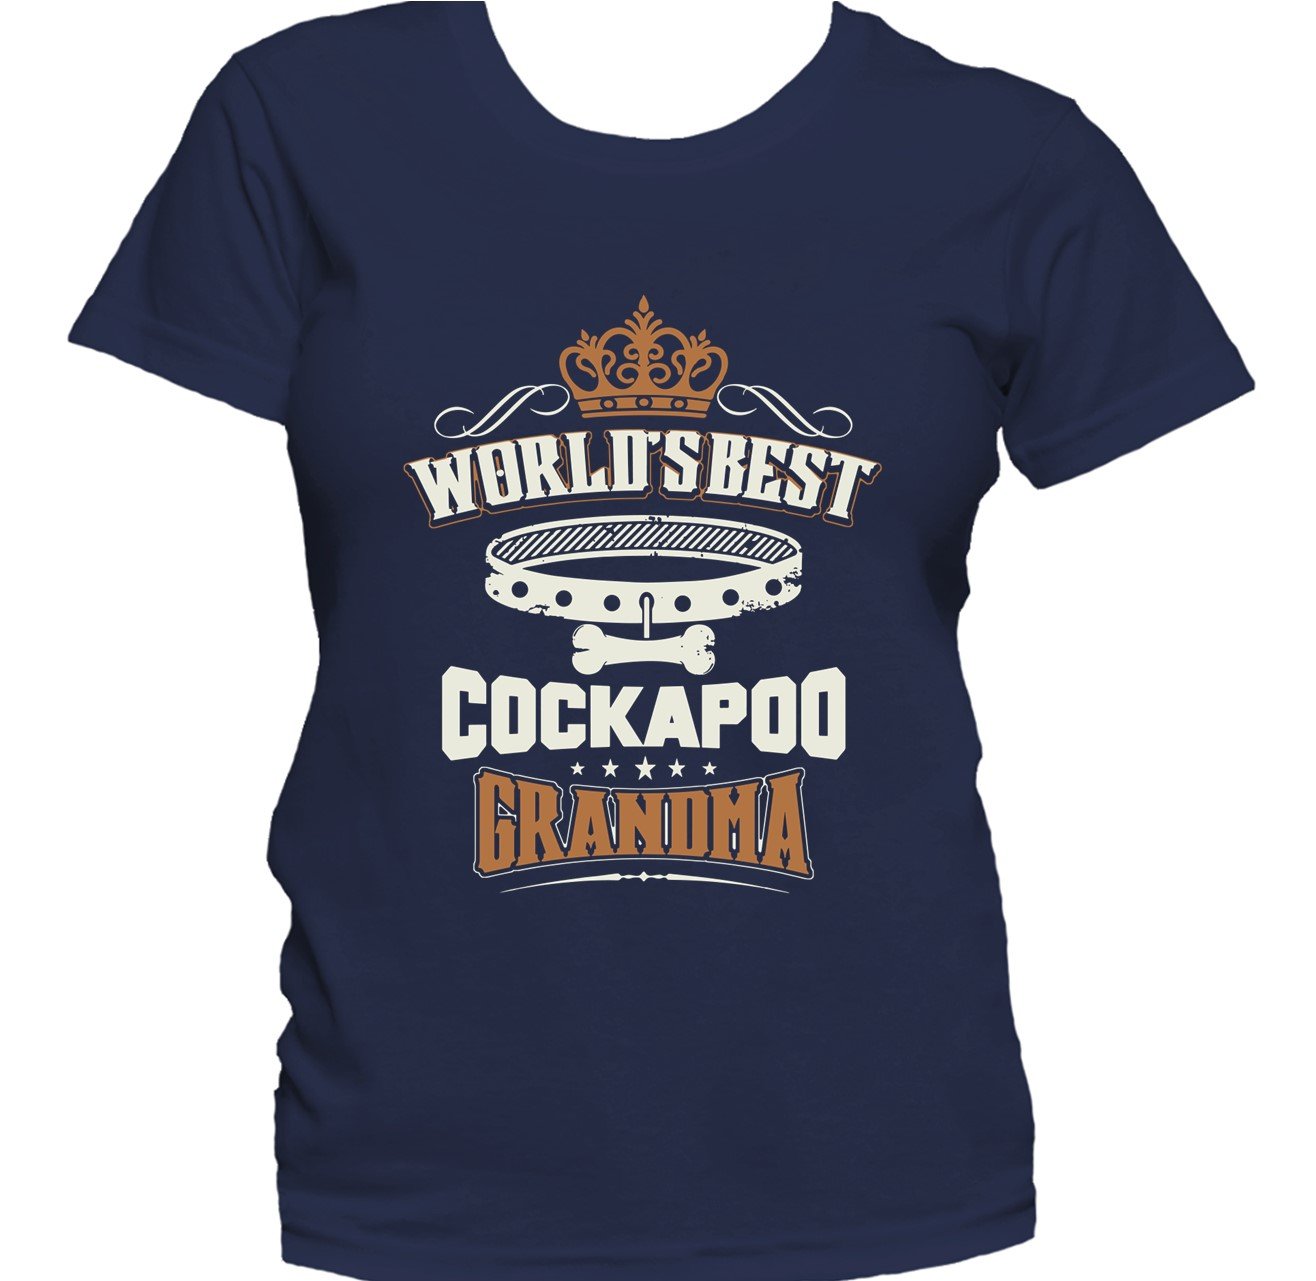 World's Best Cockapoo Grandma Women's T-Shirt